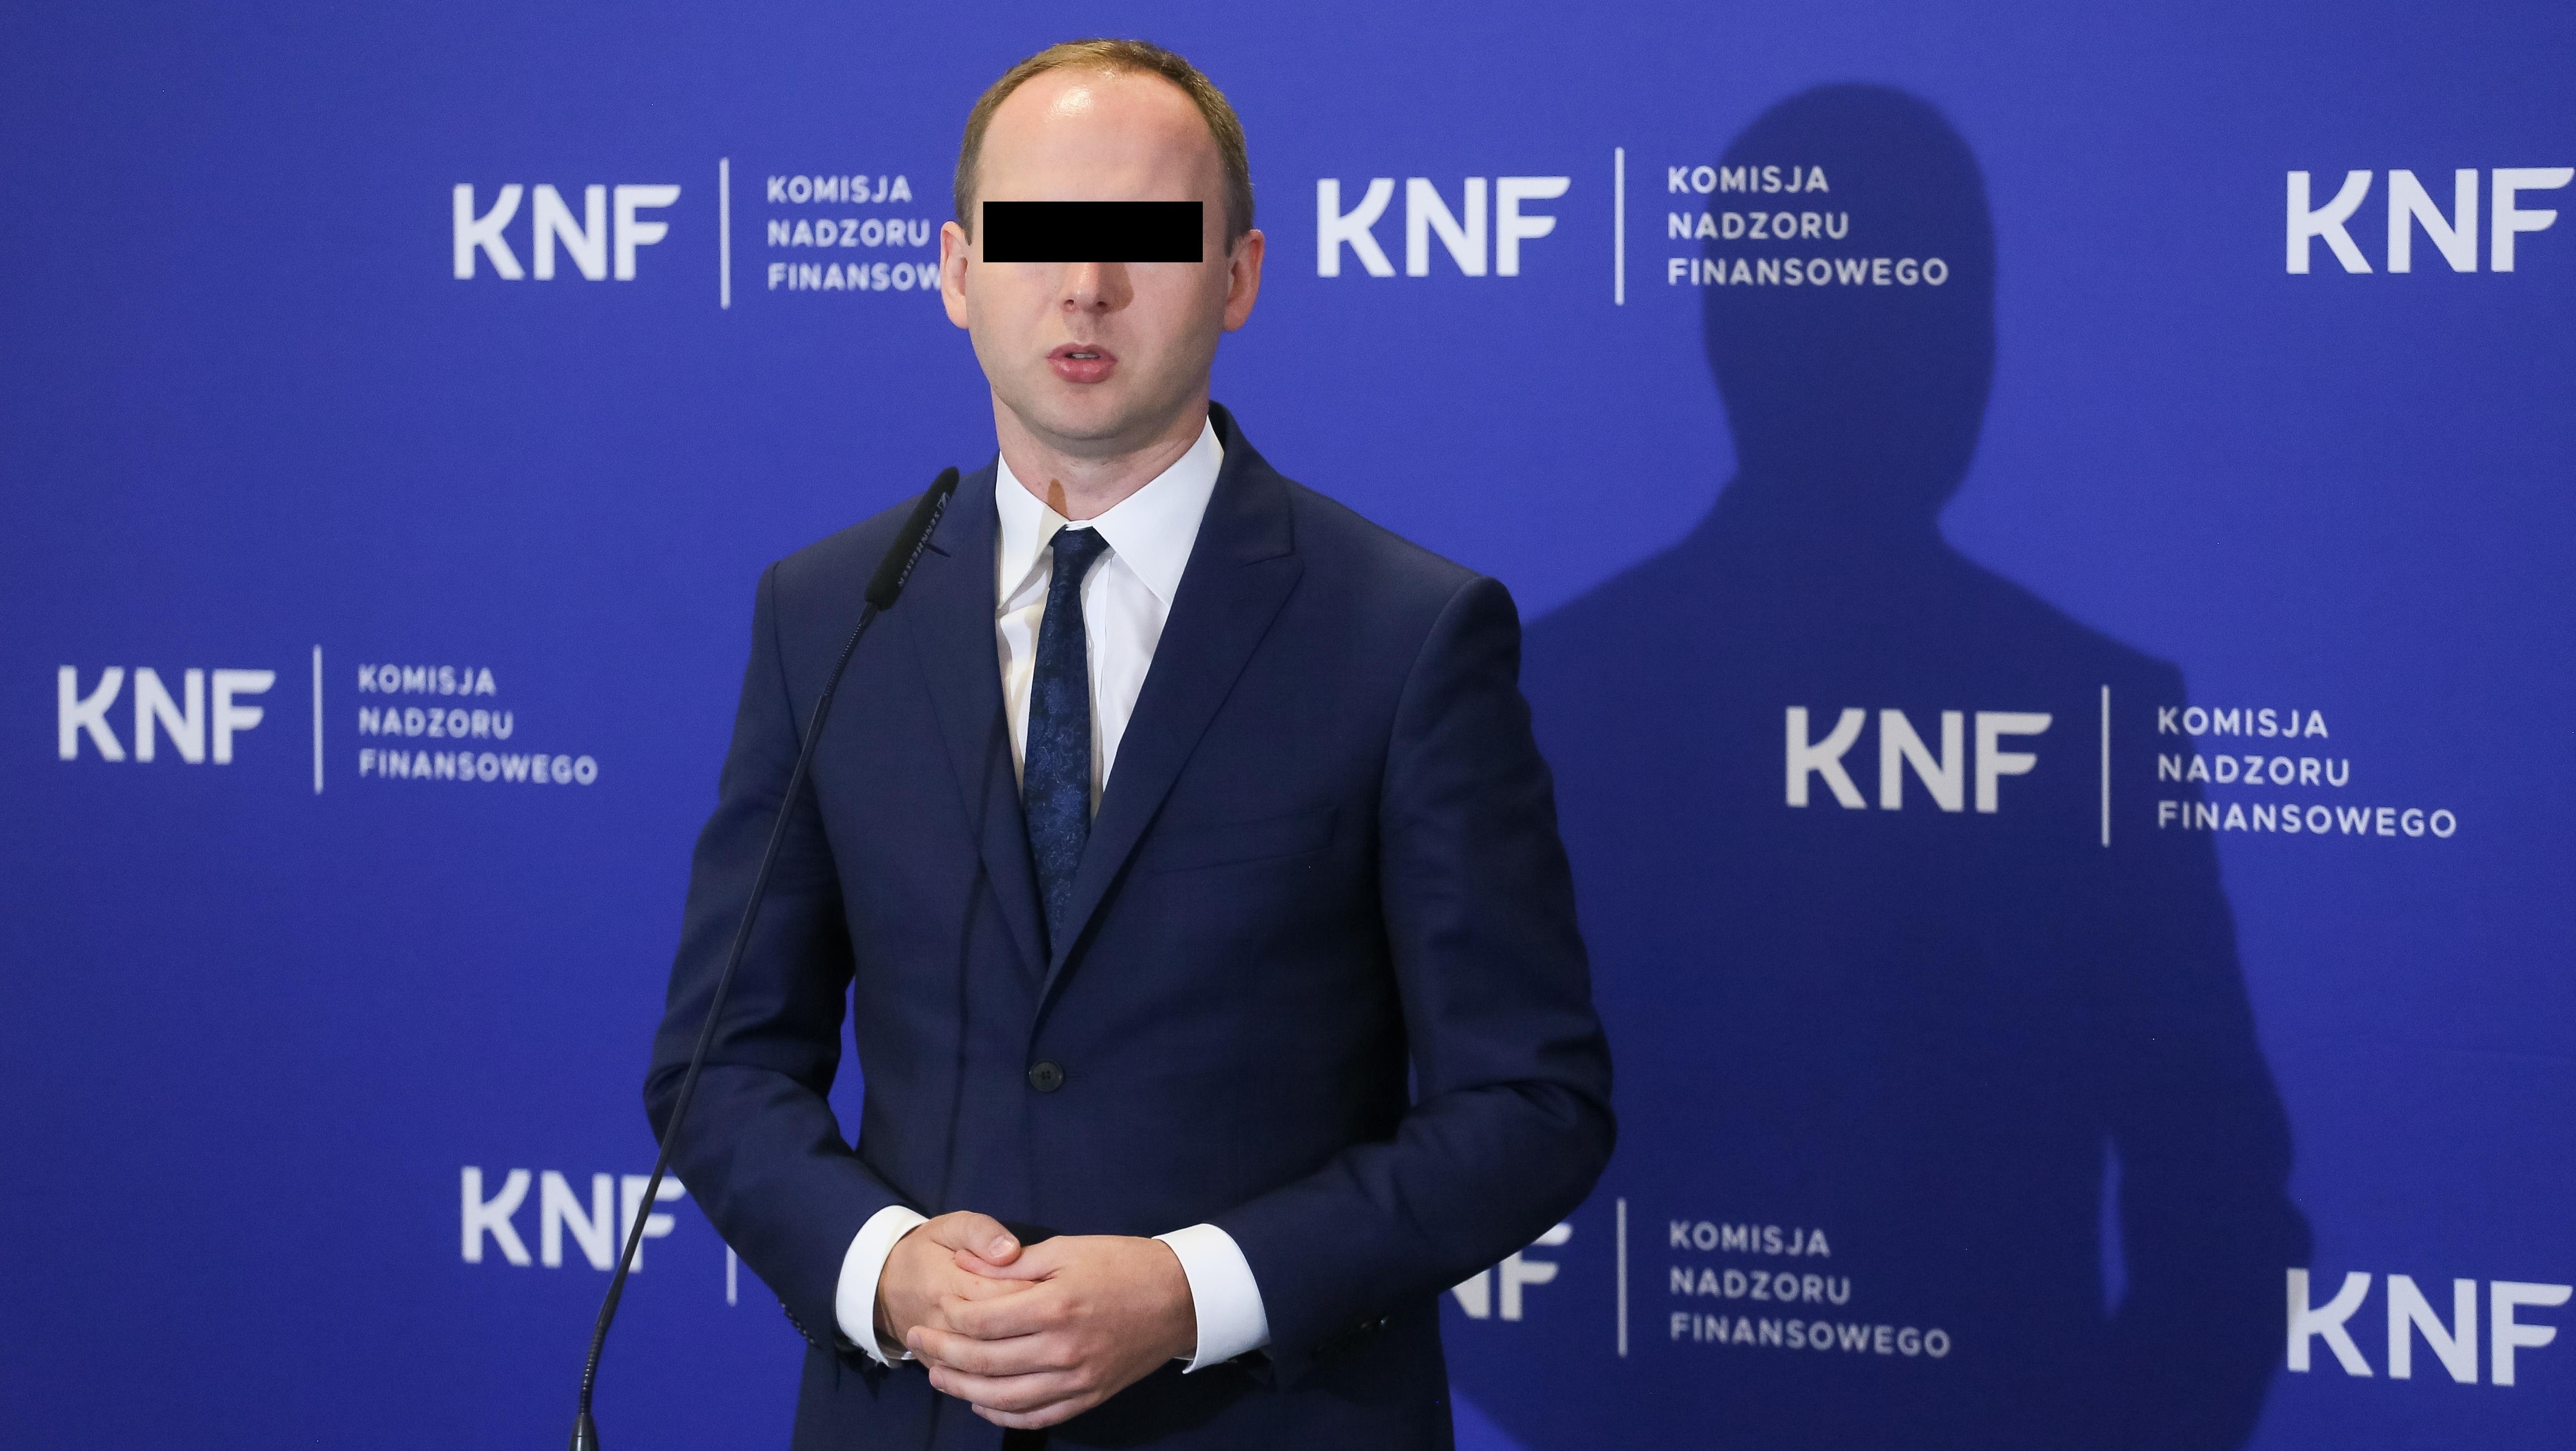 Nowe fakty ws. afery KNF. Marek Ch. jako szef KNF wynajął nową siedzibę za  131,6 mln zł